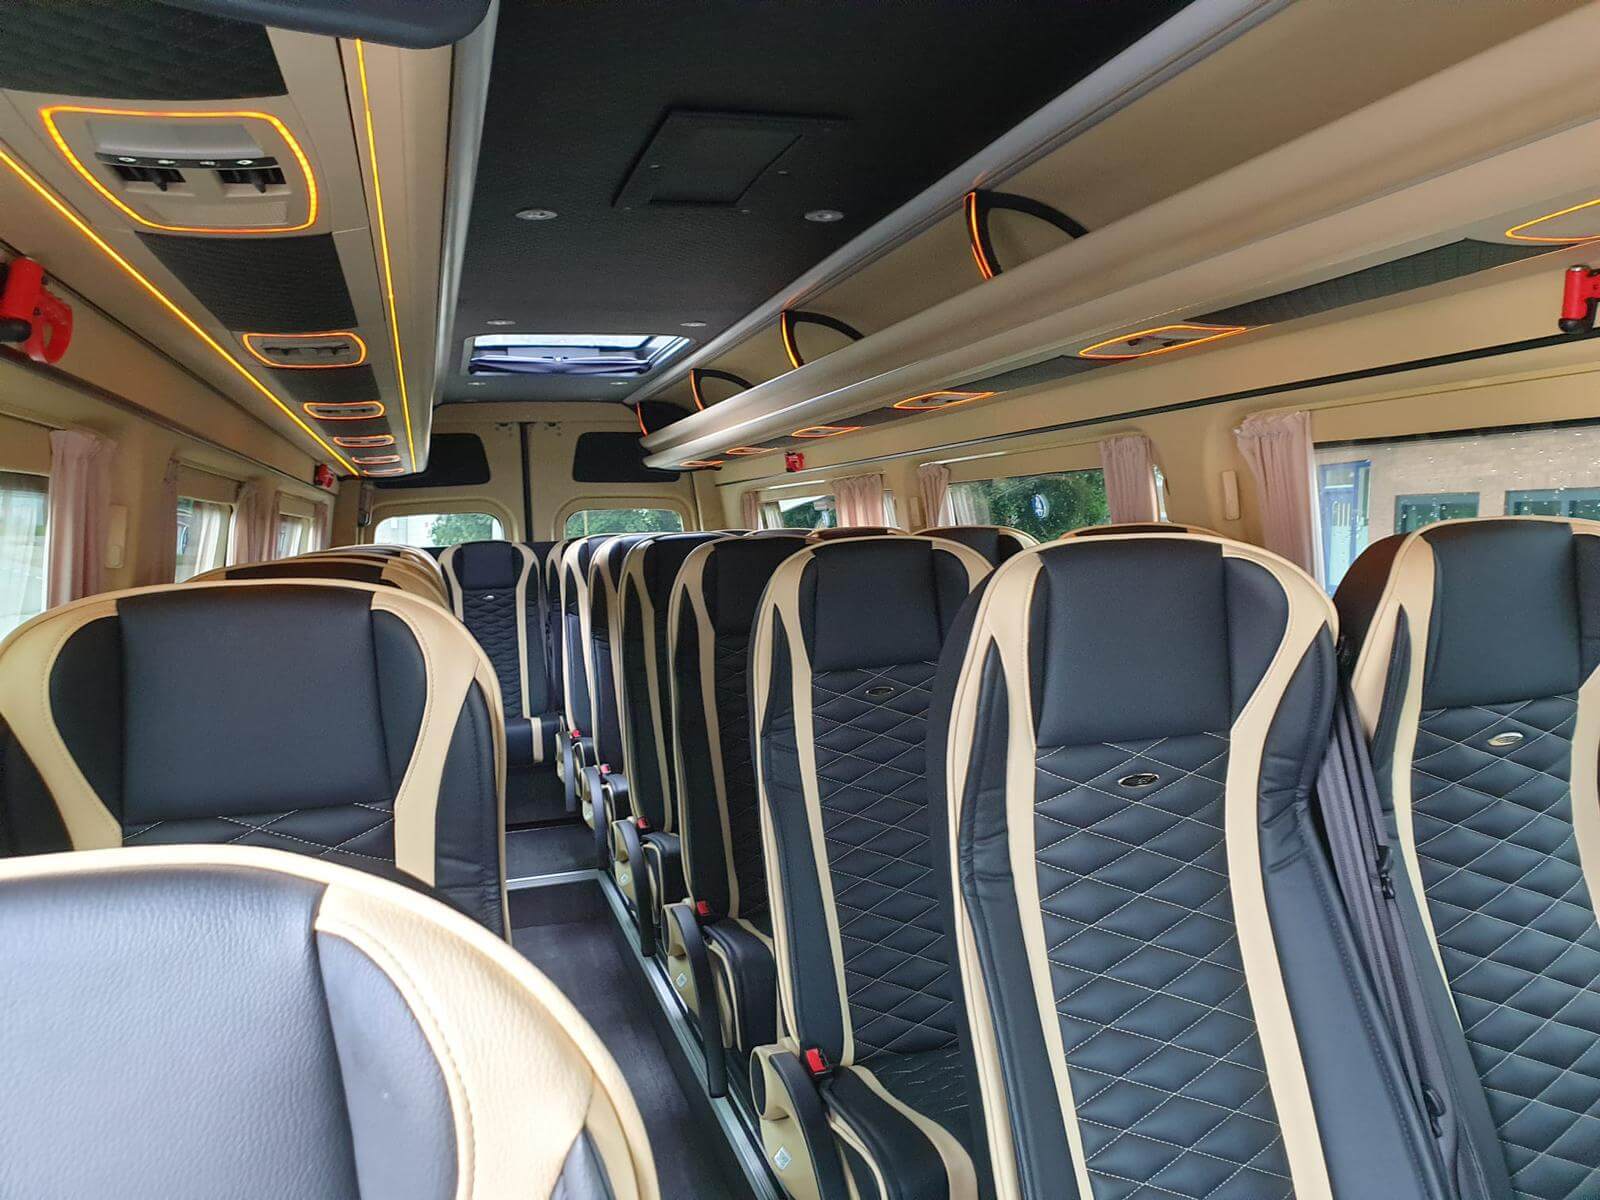 Huur een MPV - Minivan (Mercdes Sprinter  2021) met 23 stoelen van Coach Service Company uit Schiedam 